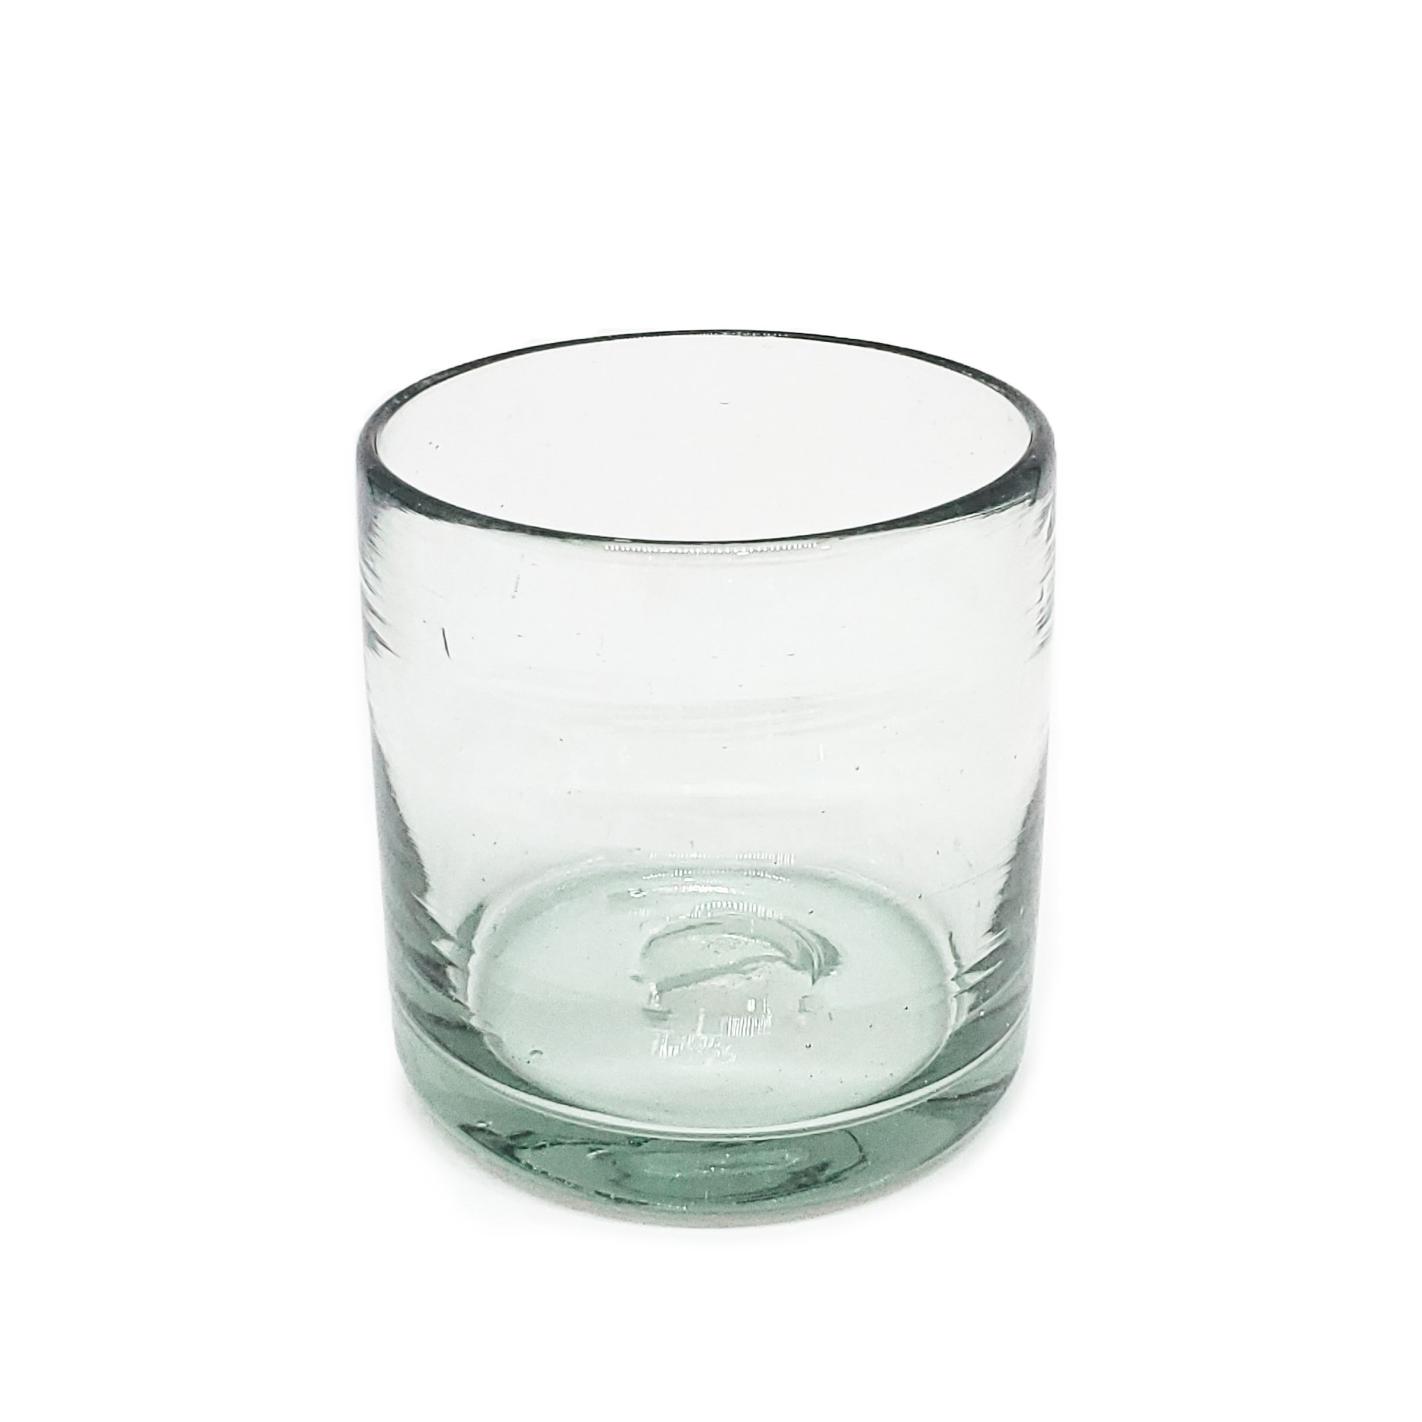 Novedades / vasos DOF 8oz Transparentes, 8 oz, Vidrio Reciclado, Libre de Plomo y Toxinas / stos artesanales vasos le darn un toque clsico a su bebida favorita.